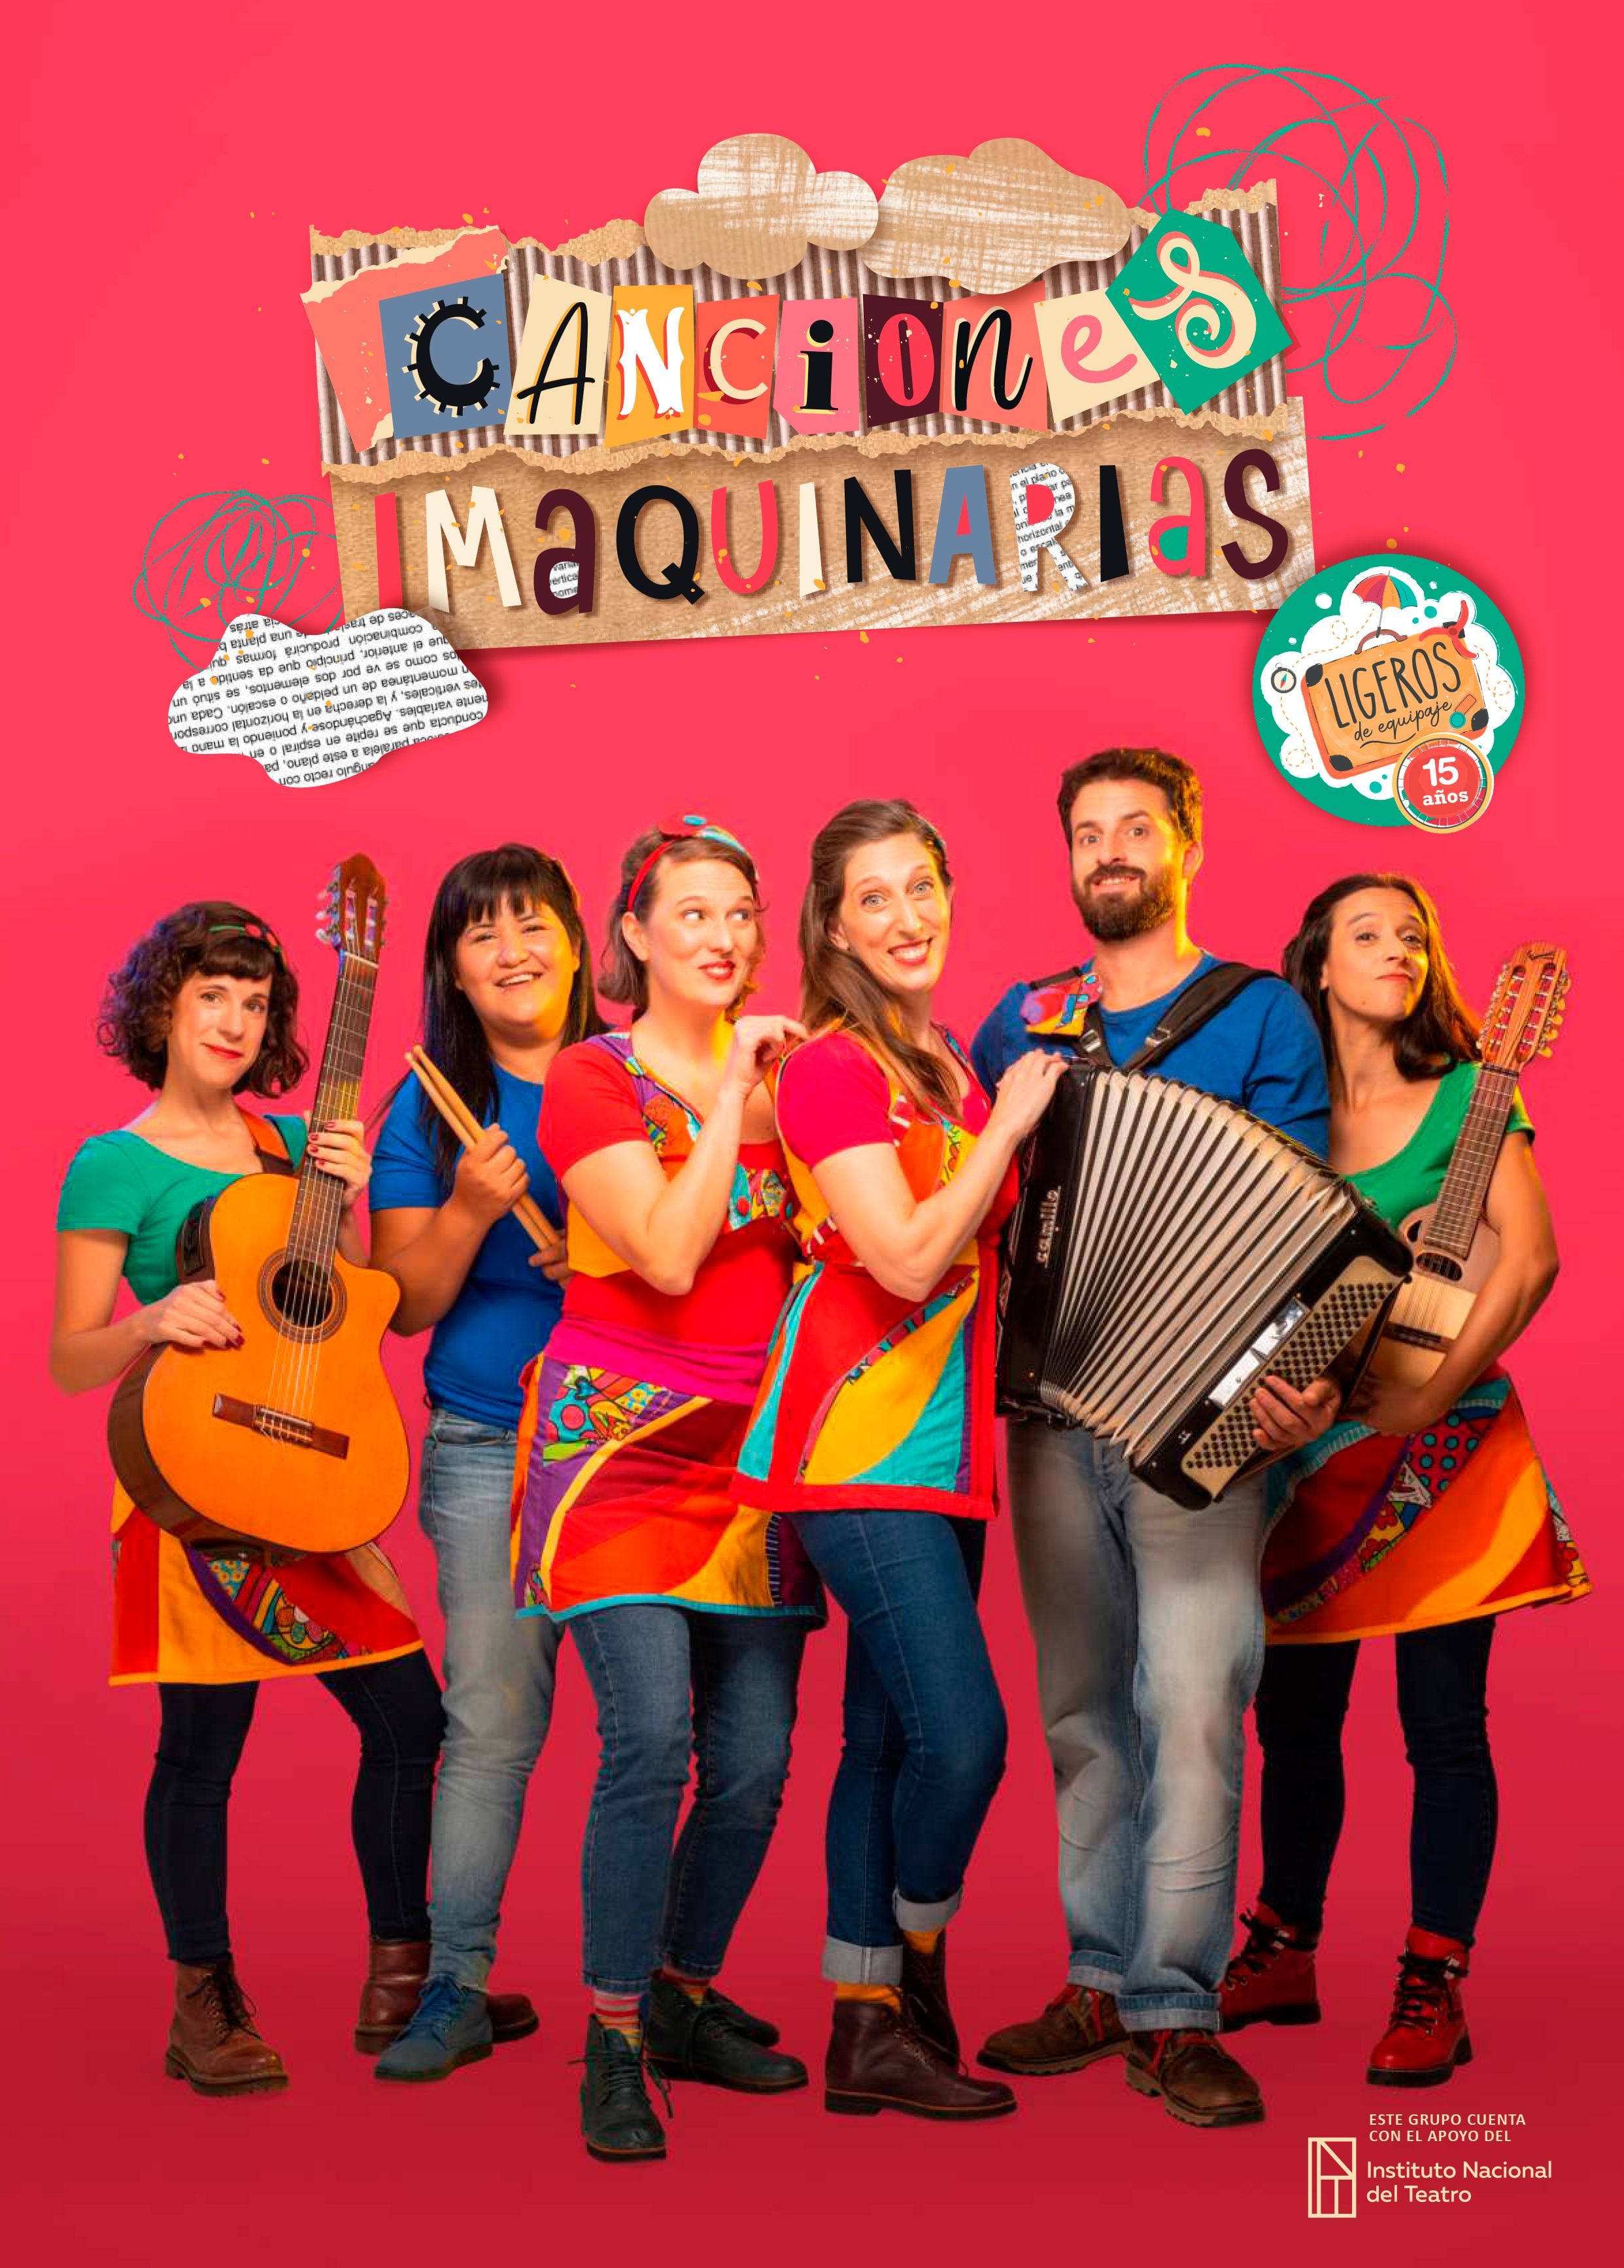 La compañía Ligeros de Equipaje cumple 15 años y para celebrarlo estrena su nuevo espectáculo con banda en vivo, Canciones Imaquinarias